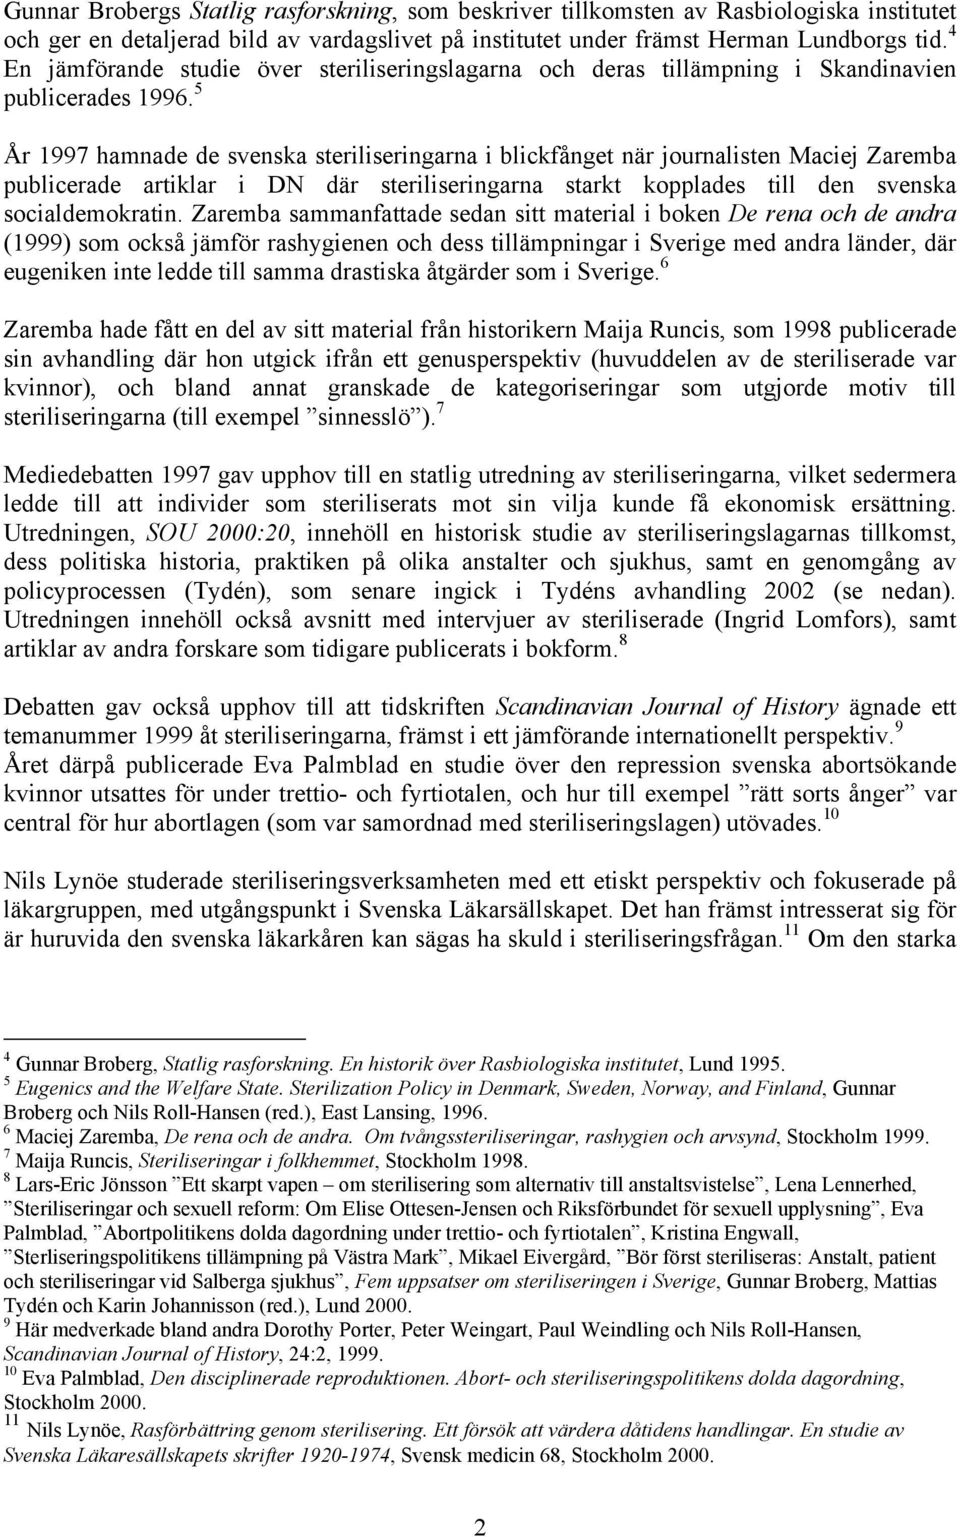 5 År 1997 hamnade de svenska steriliseringarna i blickfånget när journalisten Maciej Zaremba publicerade artiklar i DN där steriliseringarna starkt kopplades till den svenska socialdemokratin.